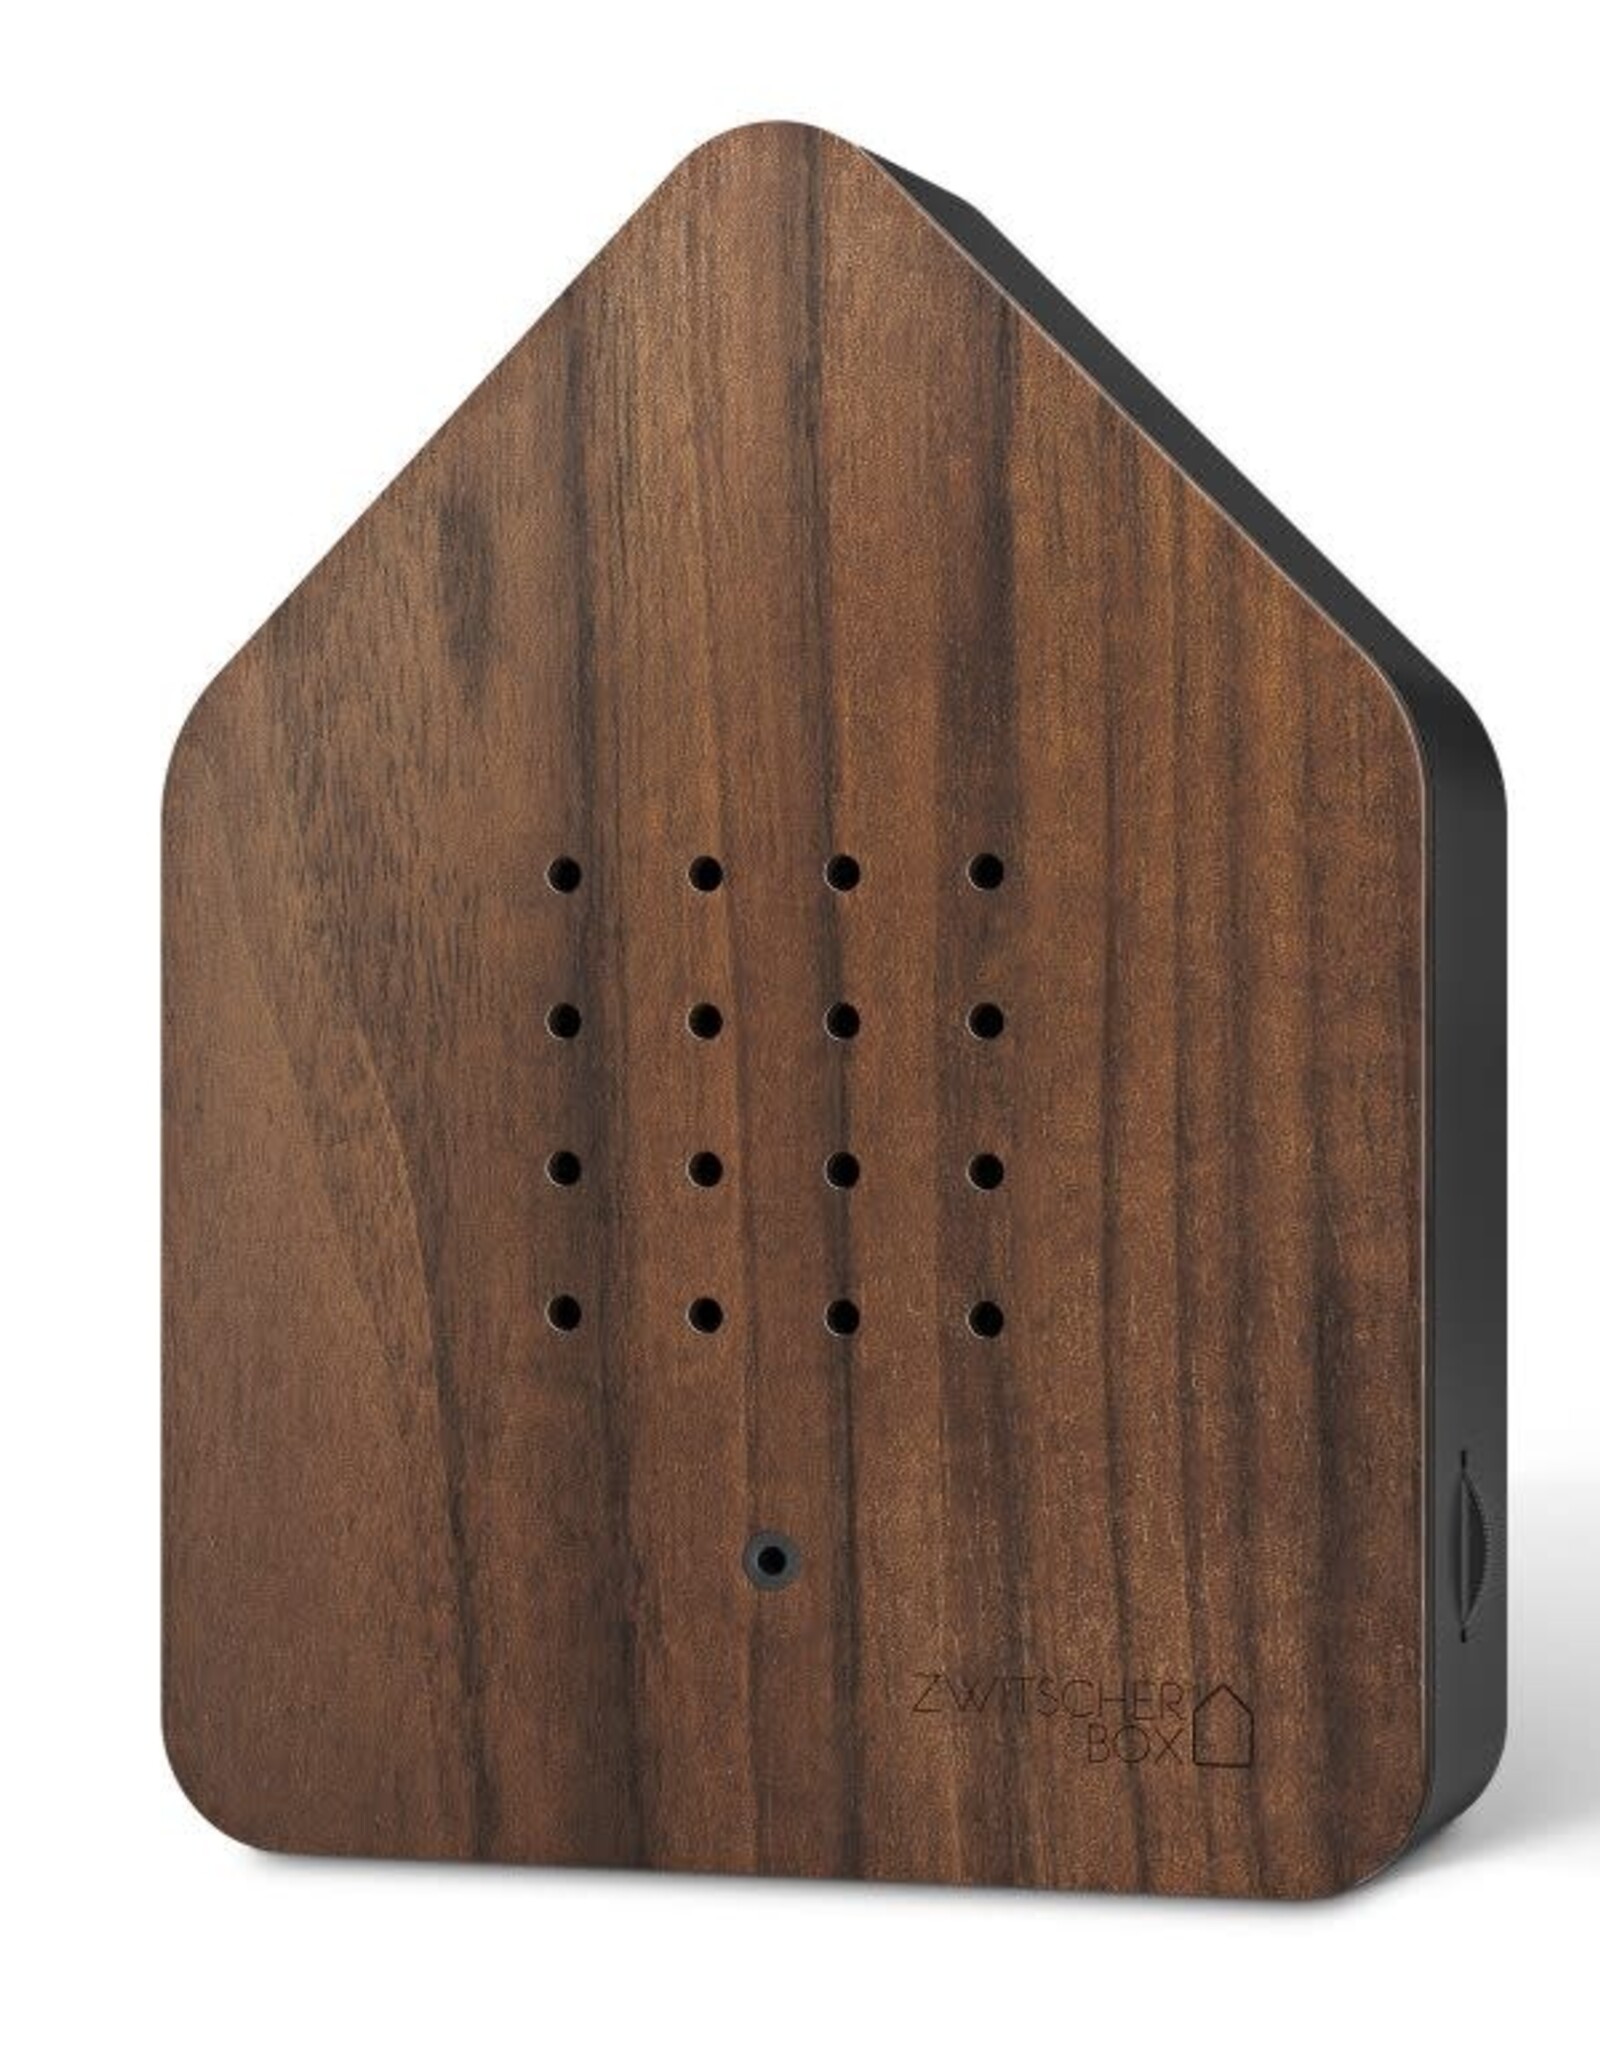 relaxound RELAXOUND - Zwitscherbox Wood noyer/noir